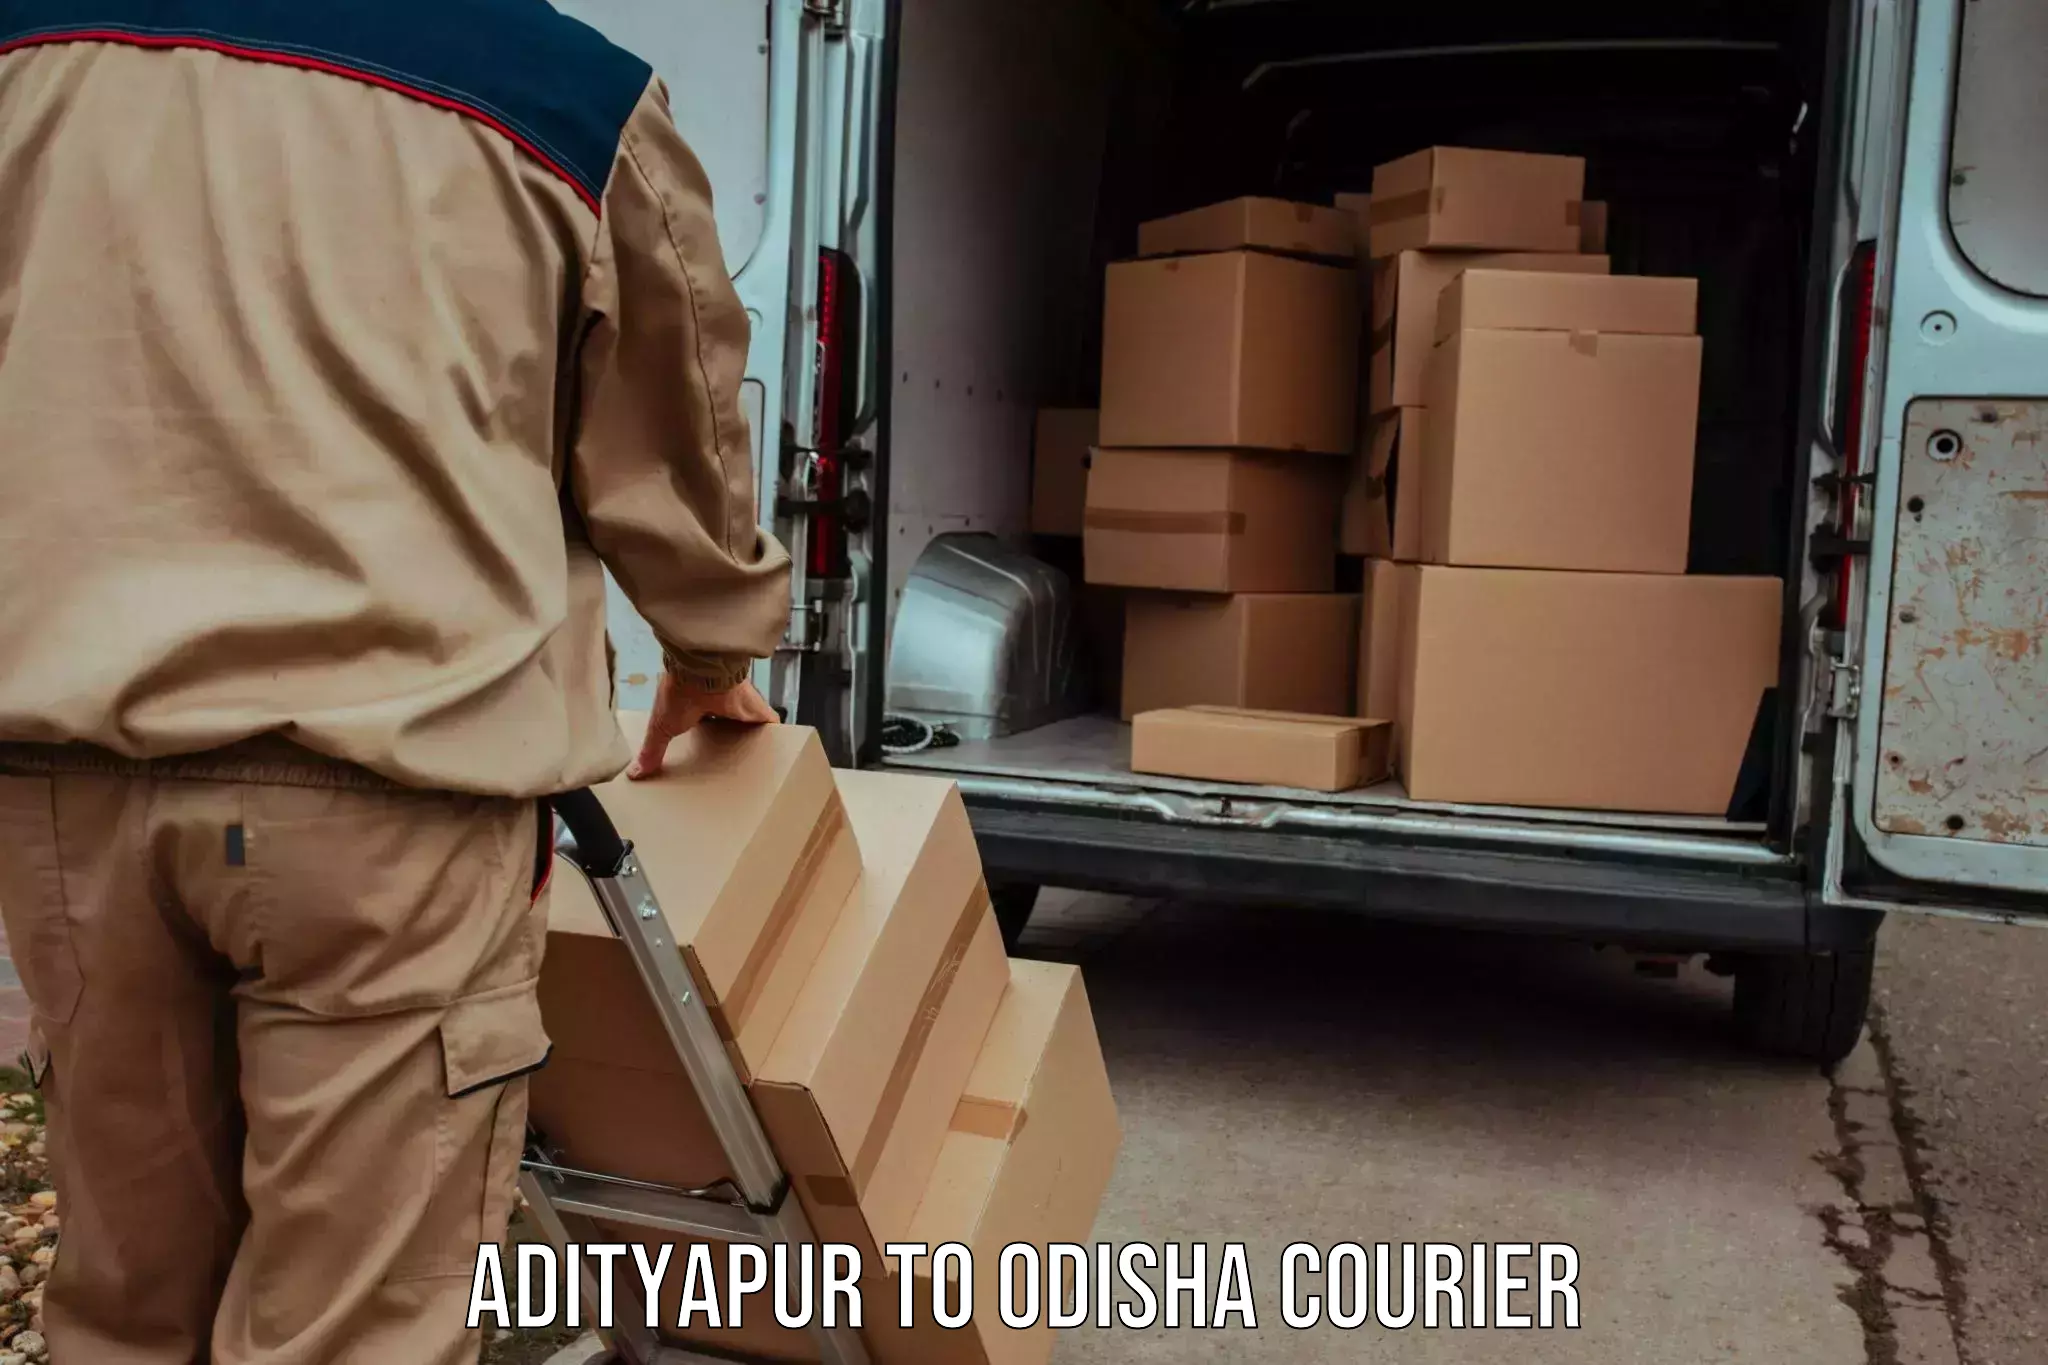 Door-to-door freight service Adityapur to Riamal